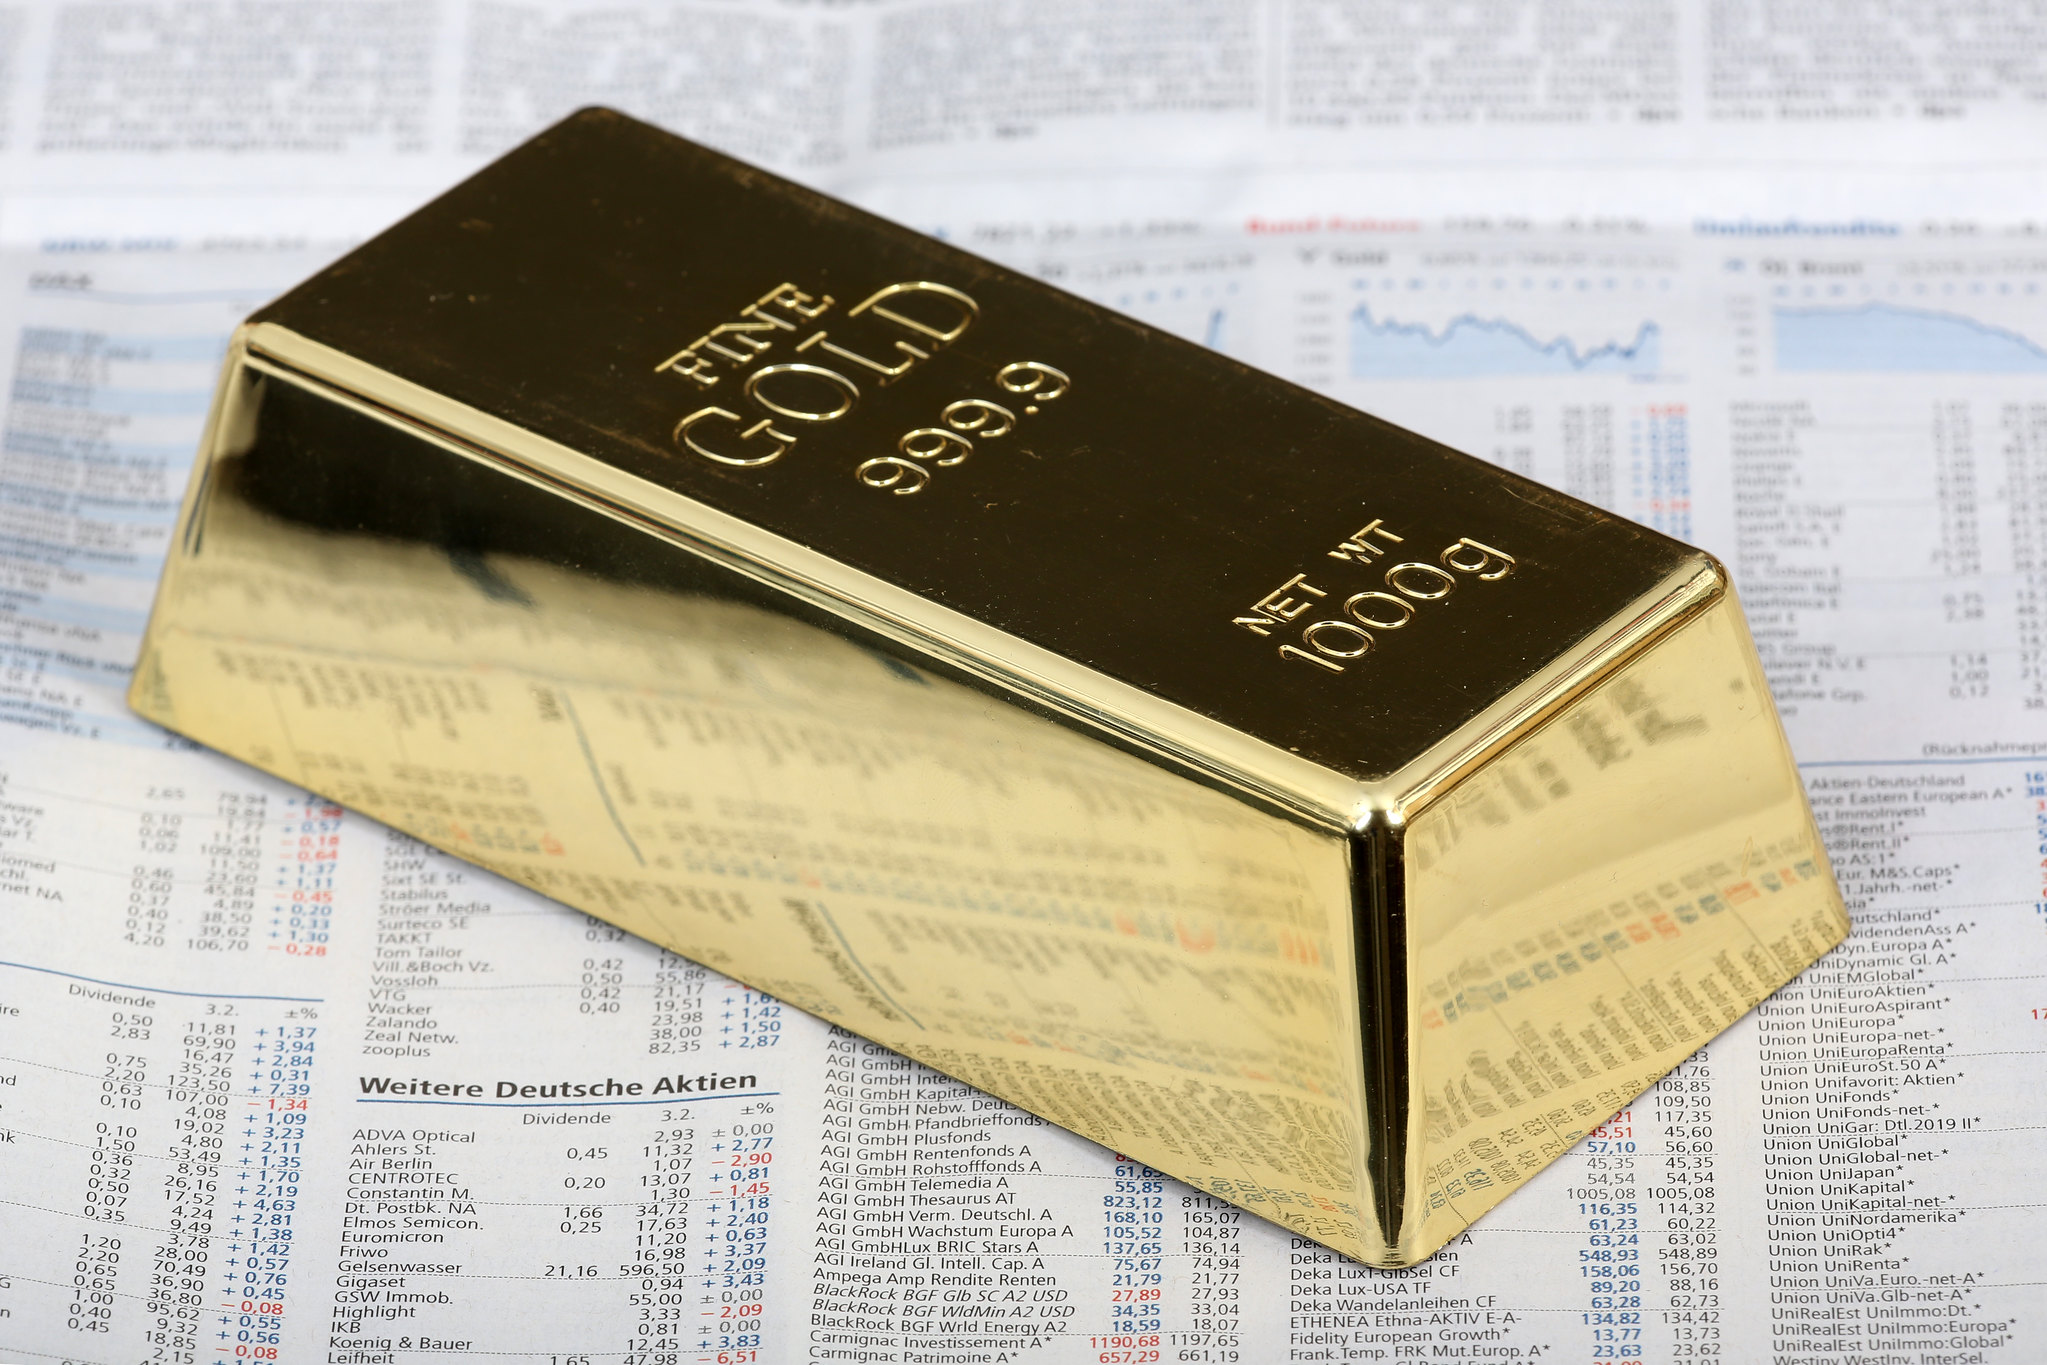 Beleggers gaan weer vol voor goud, goud-ETF ziet grootste instroom | Goudhub